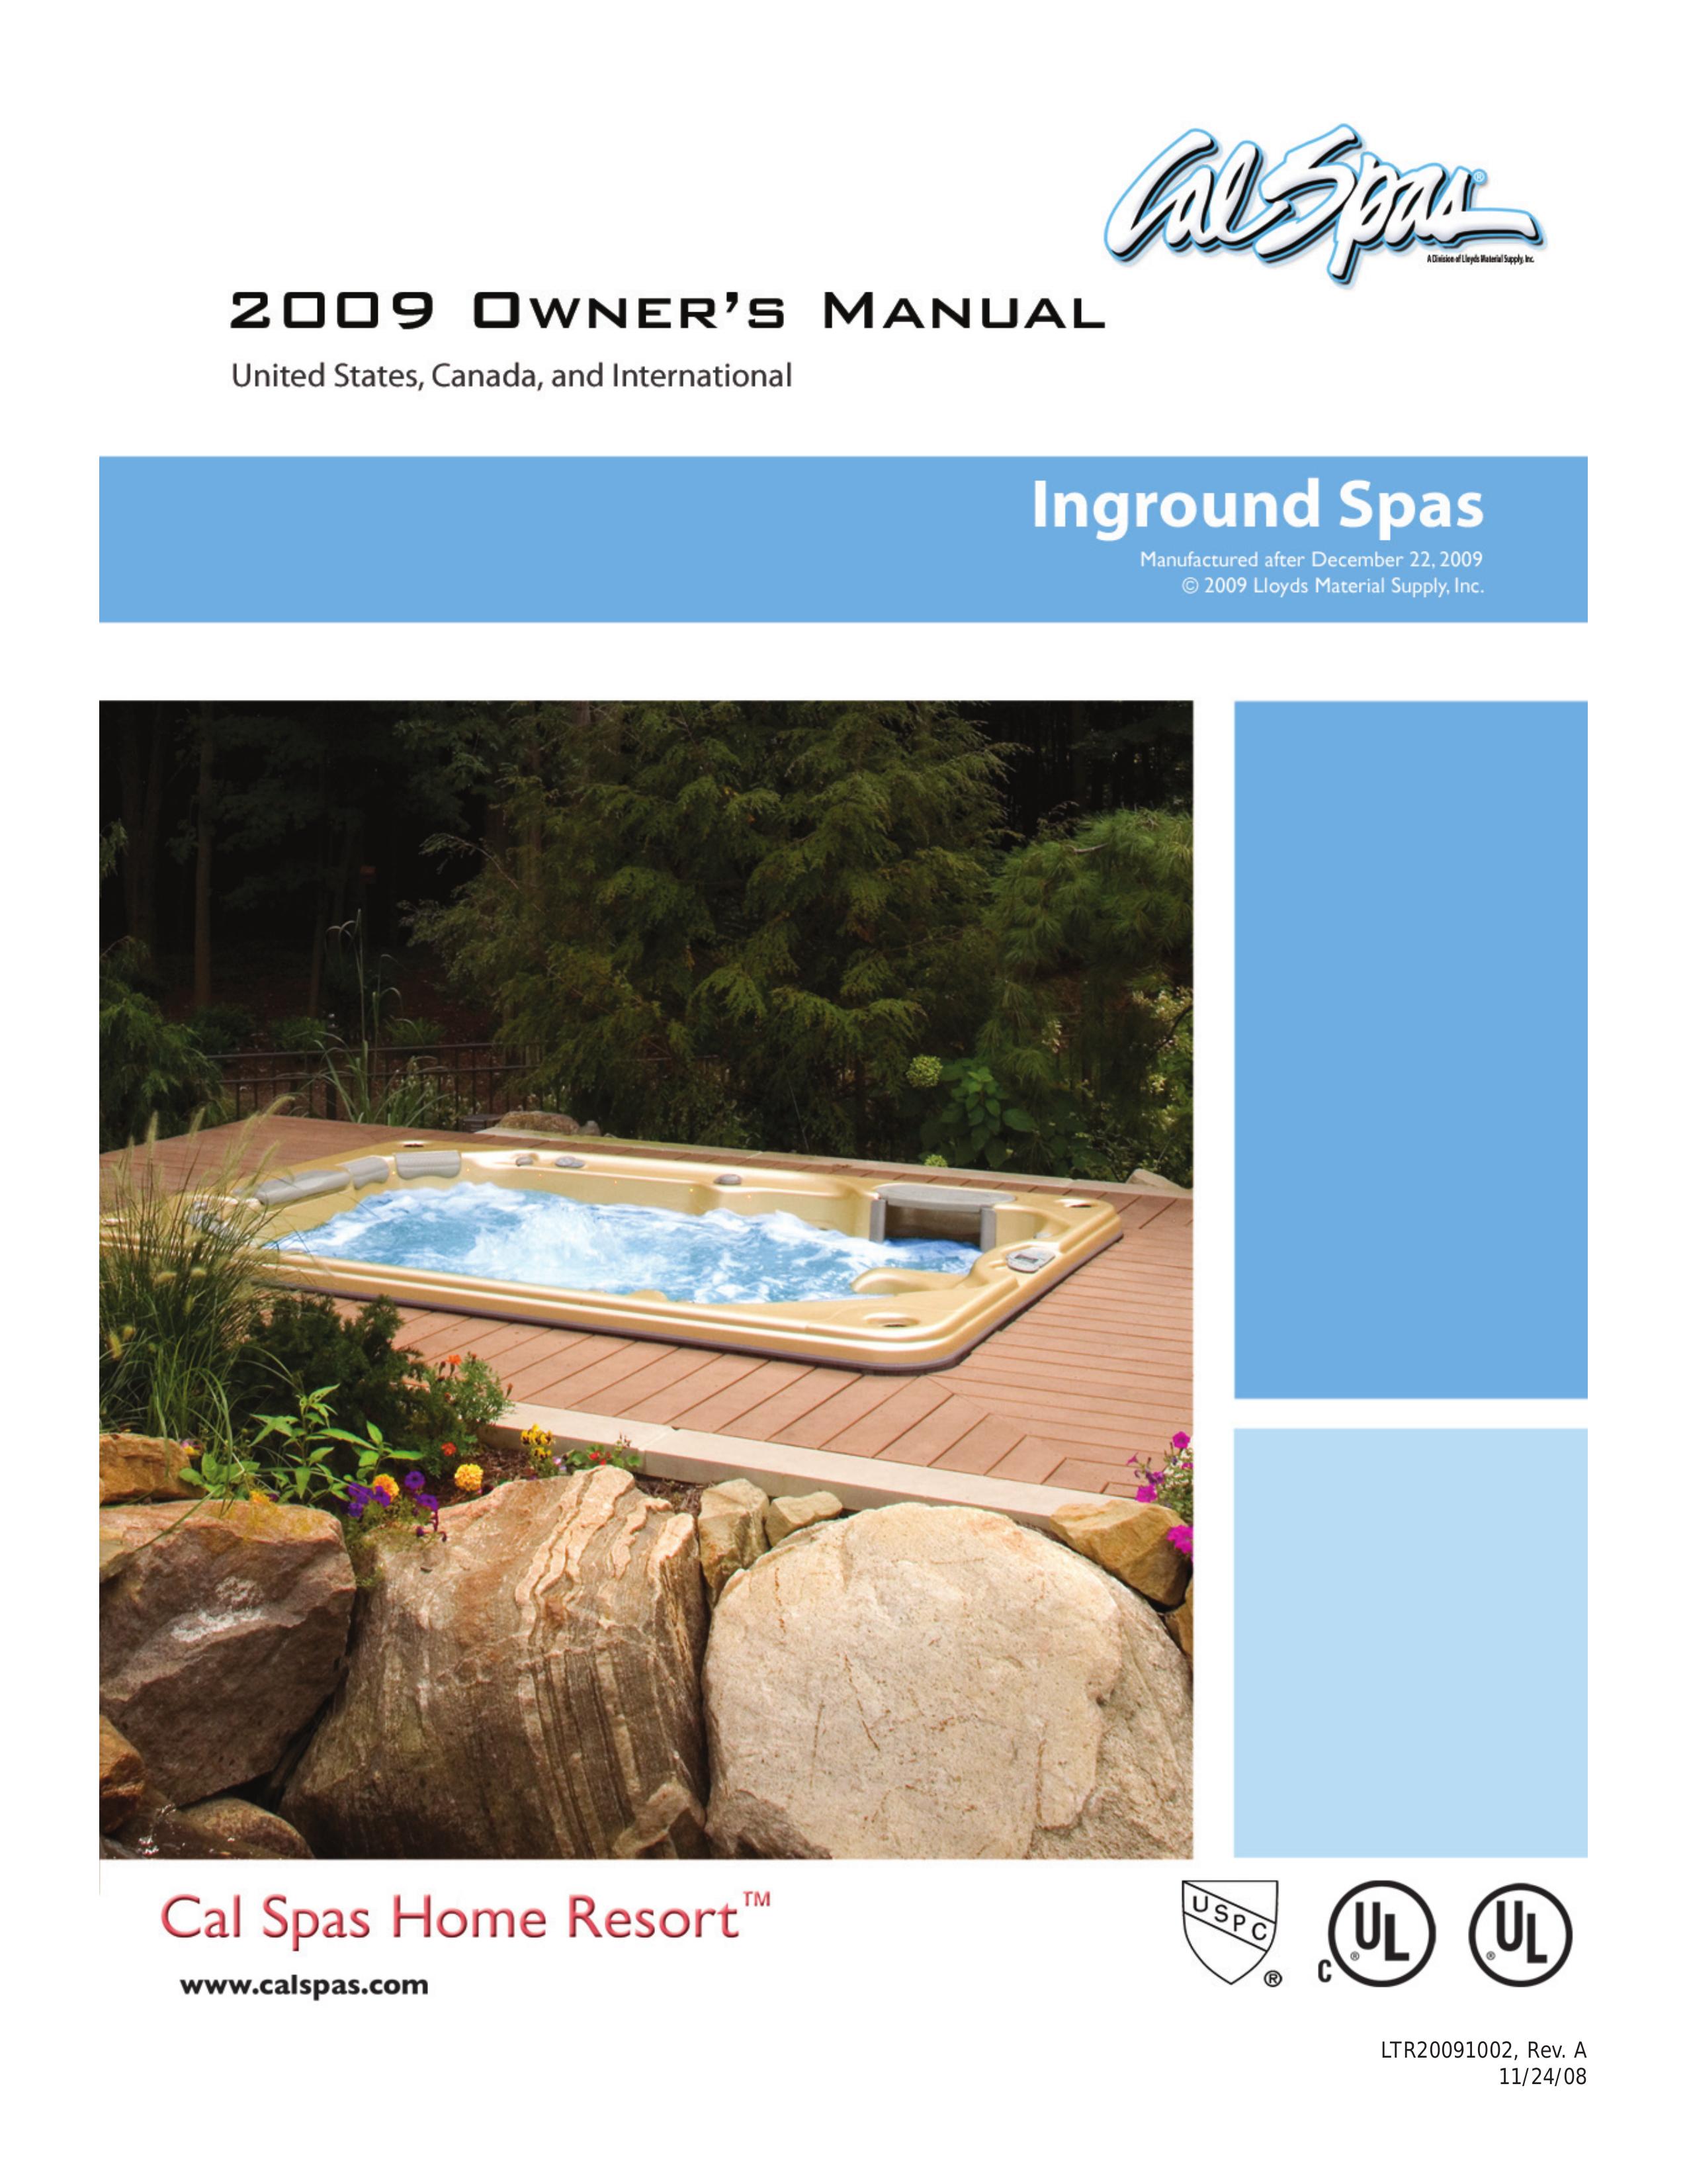 Cal Spas Inground Spa Hot Tub User Manual